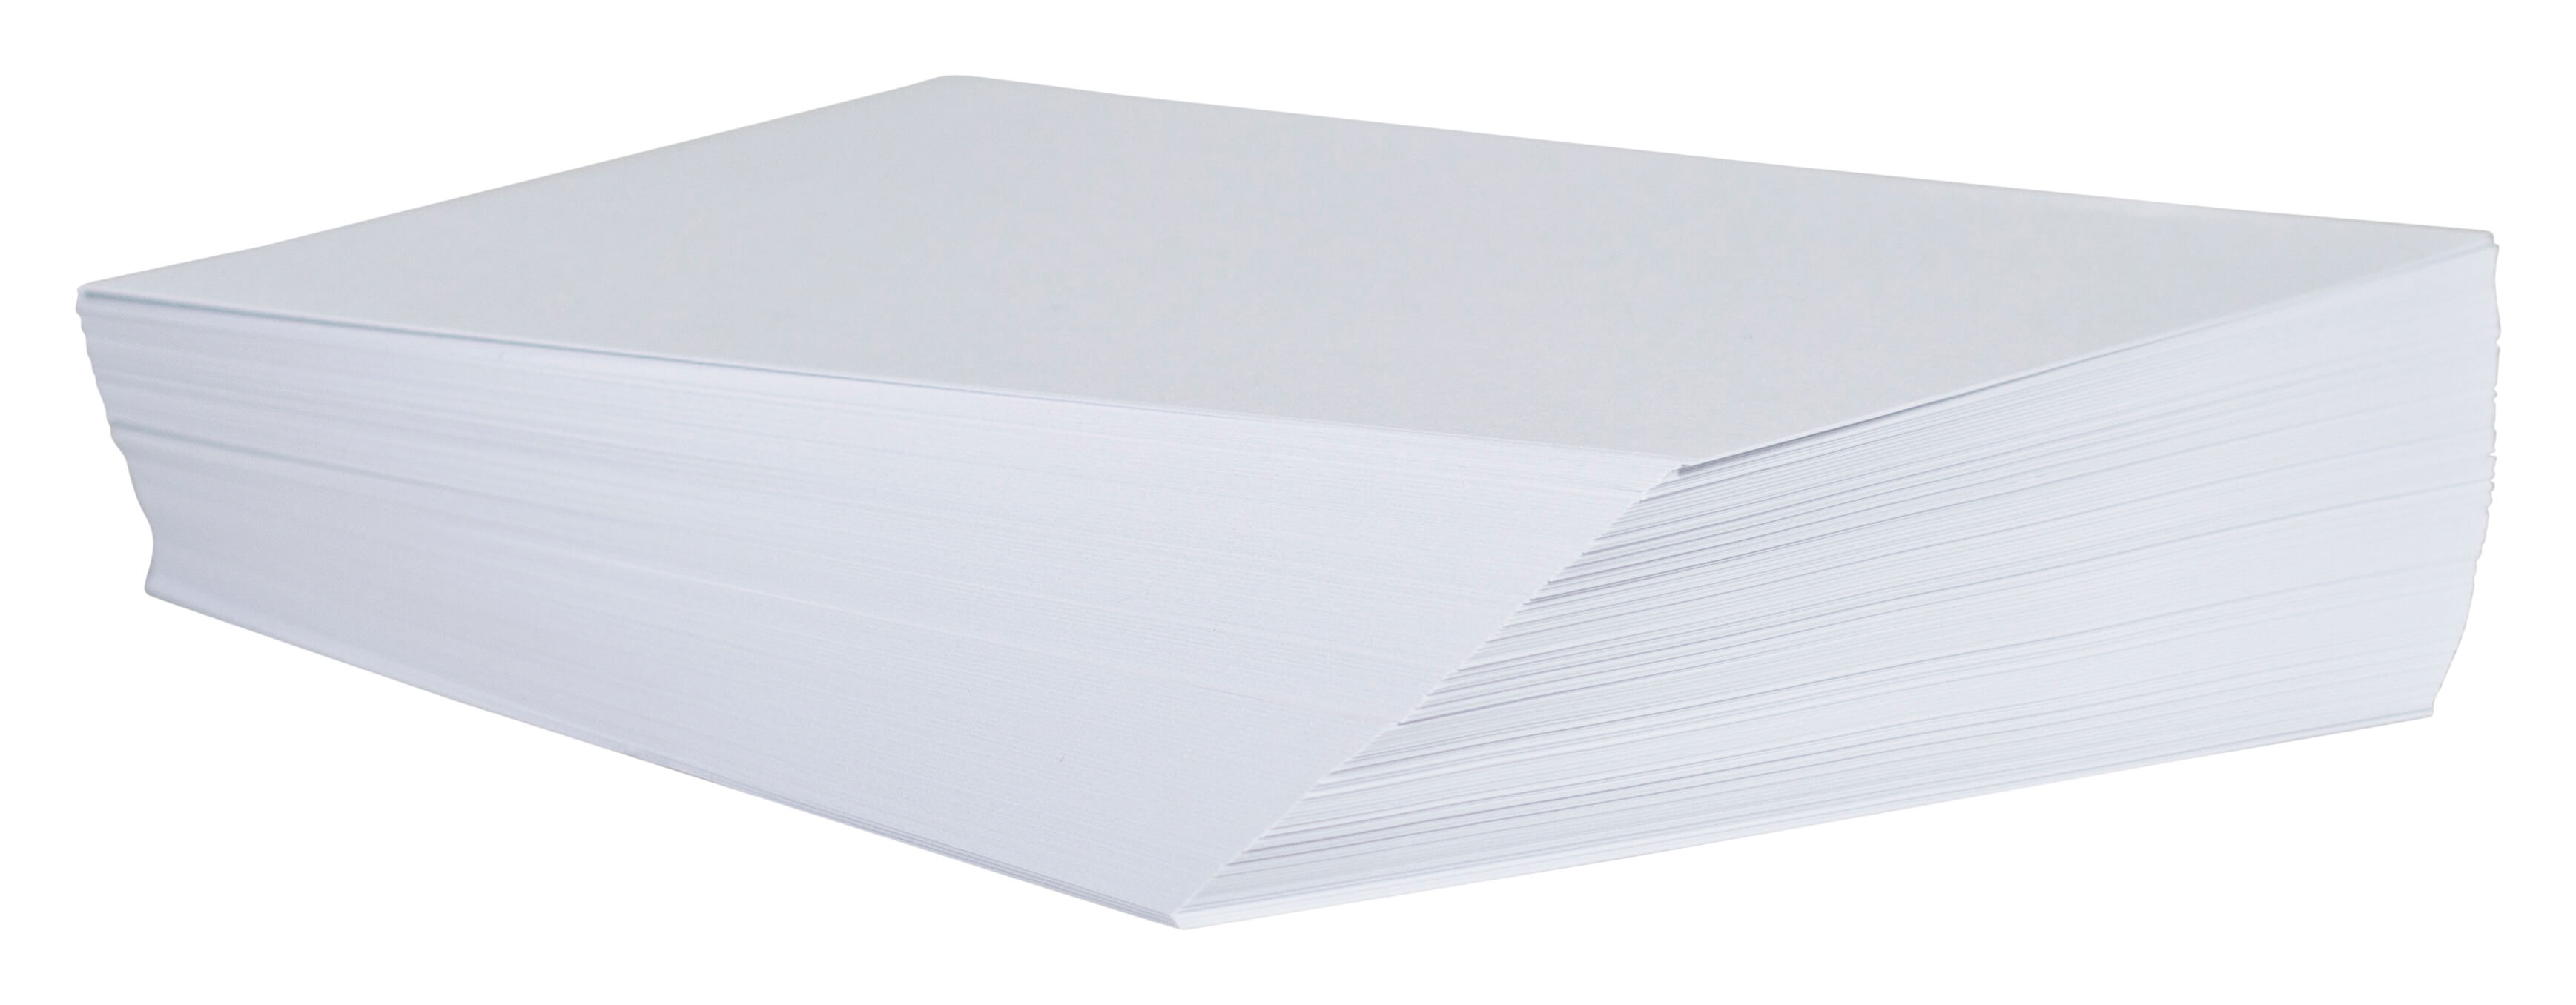 Kopierpapier, 80g, weiß - 500 Blatt